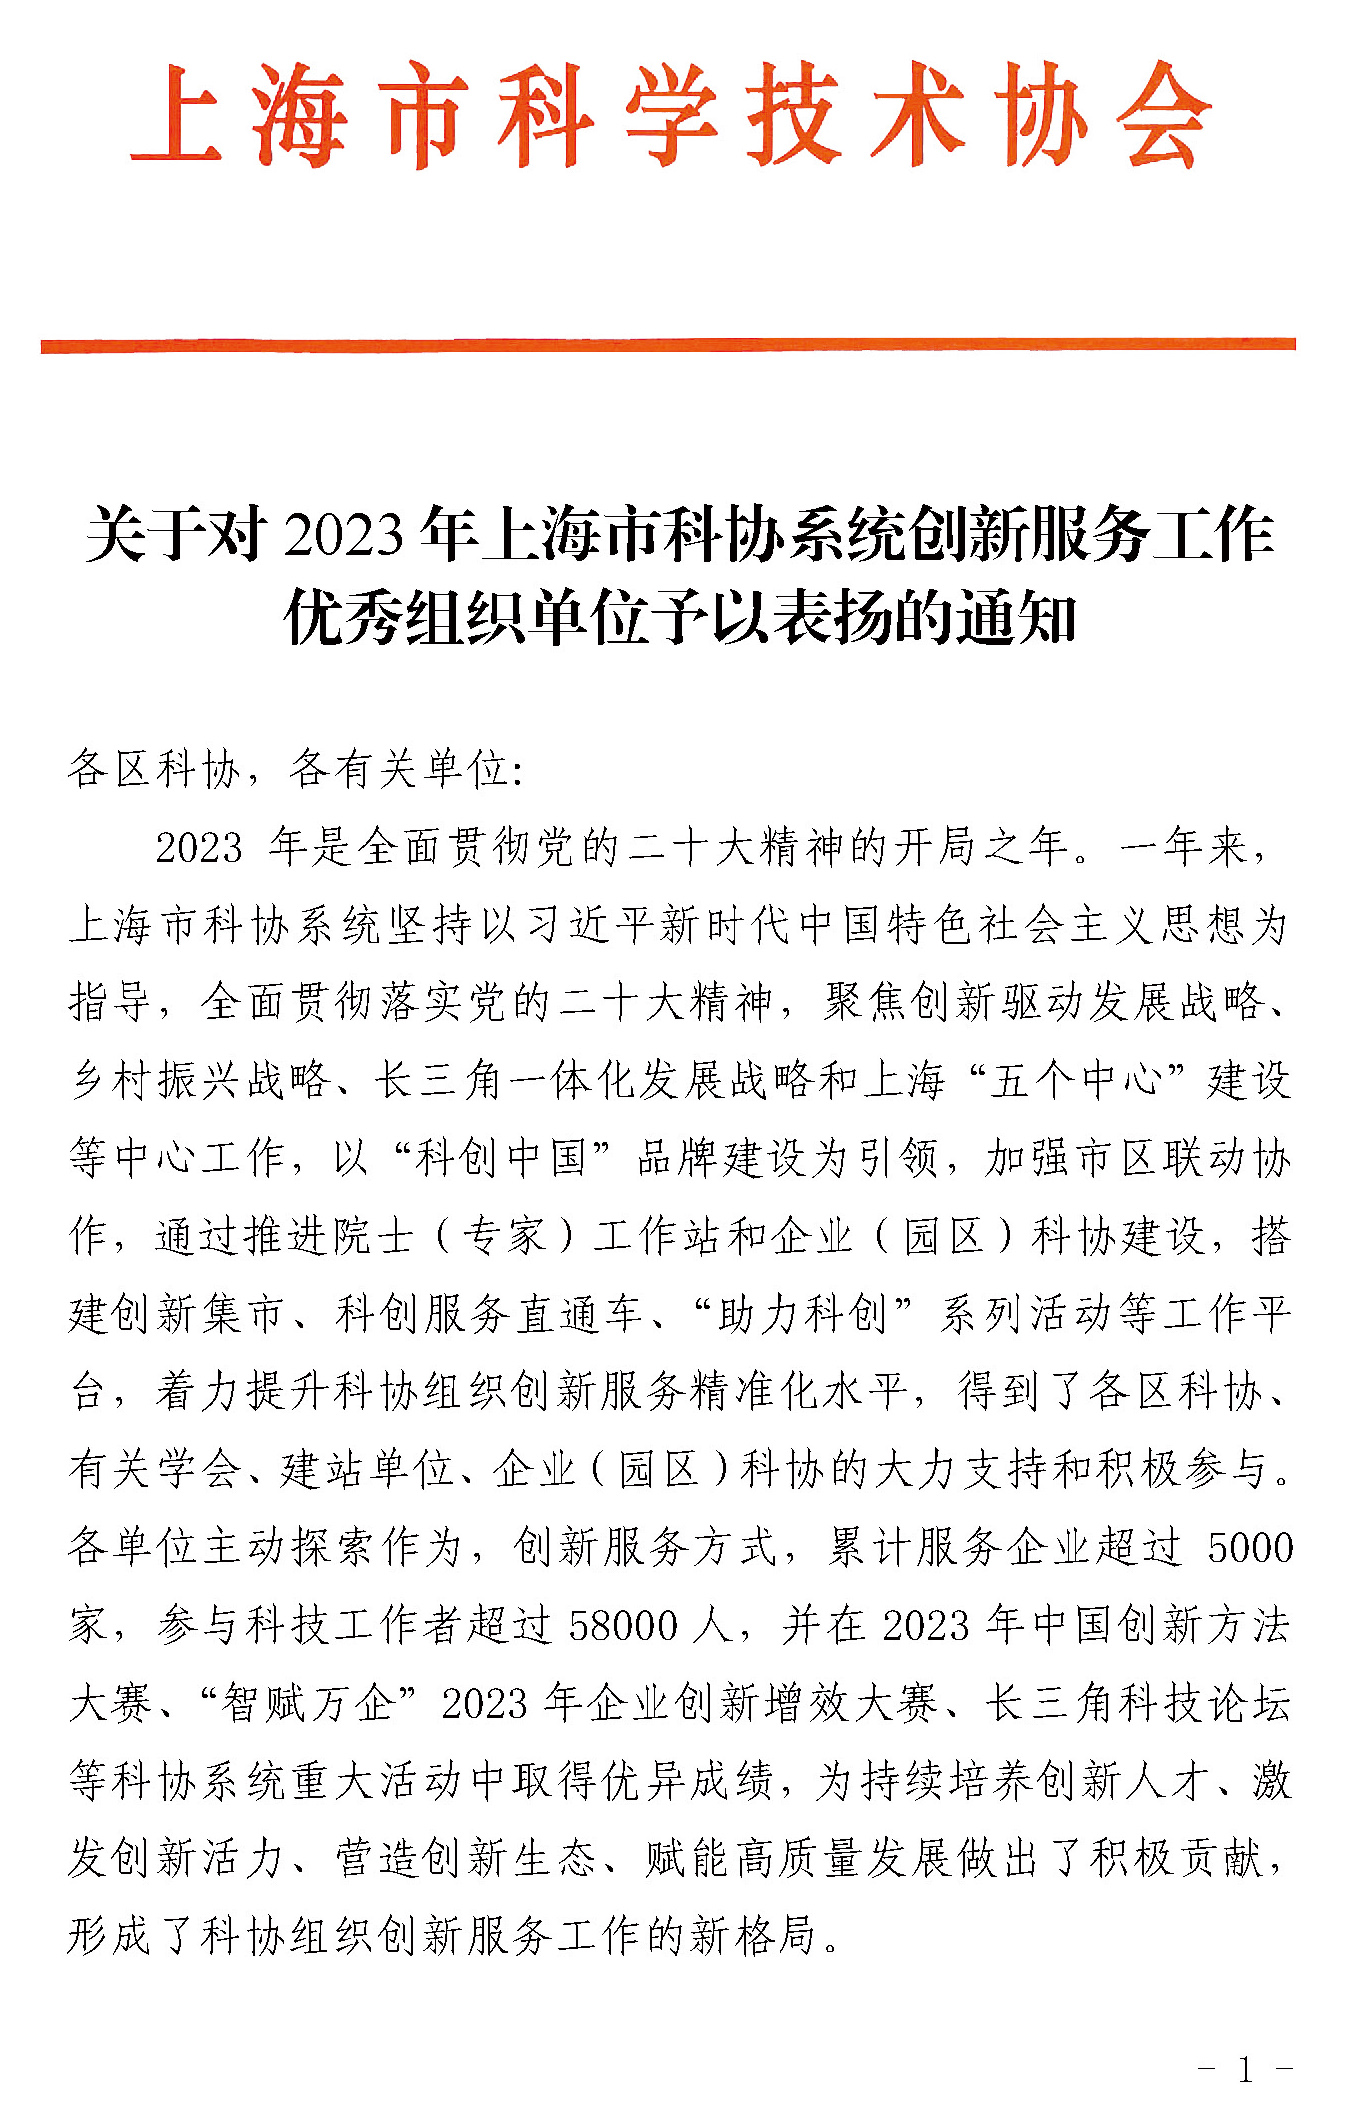 博陽新能榮獲2023年上海市科協系統創新服務工作優秀組織單位